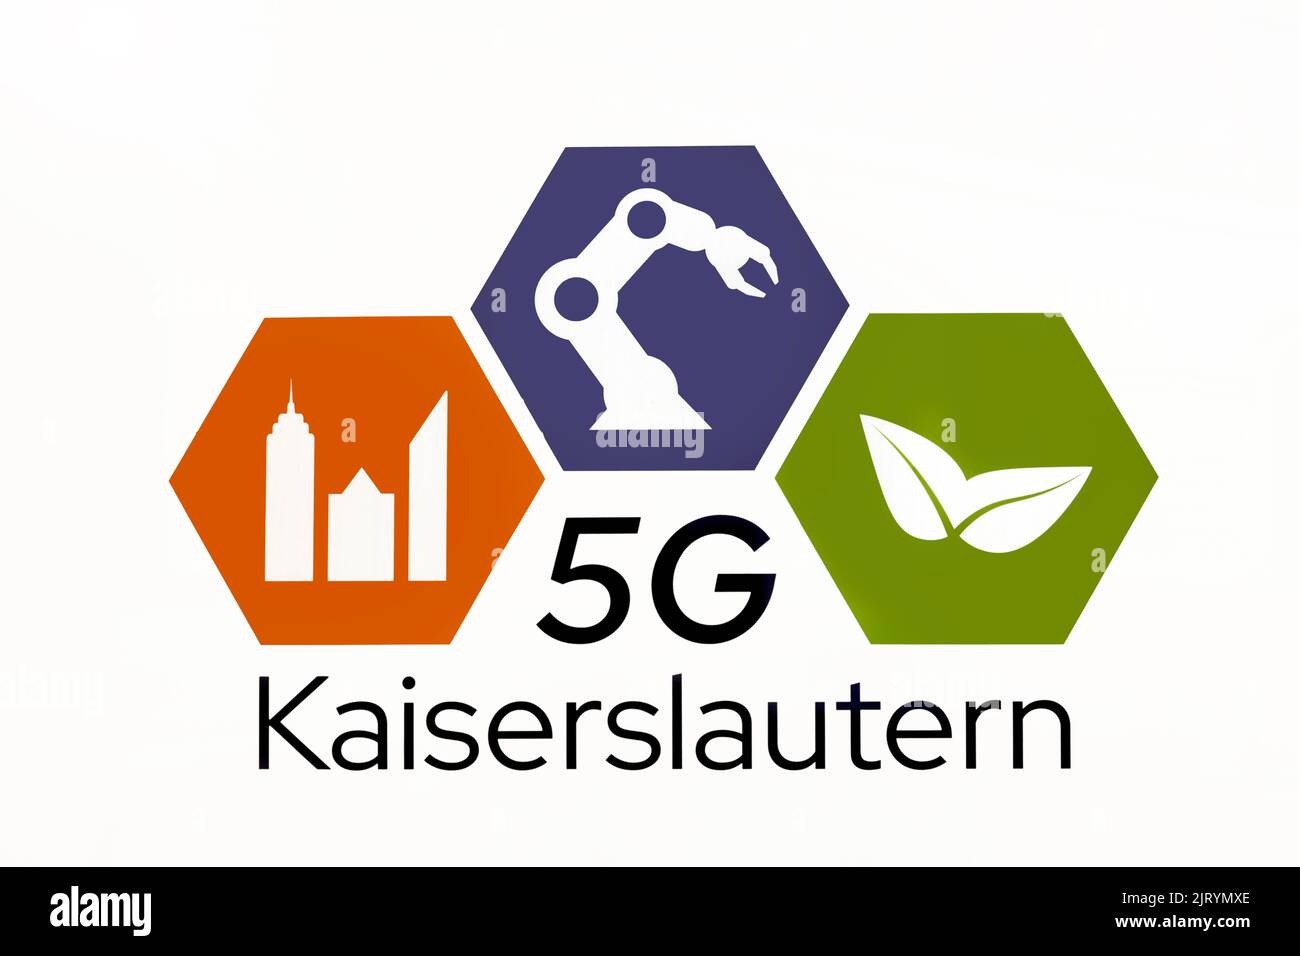 Signe et logos de 5G Kaiserslautern, technologie pour les personnes et l'environnement Banque D'Images